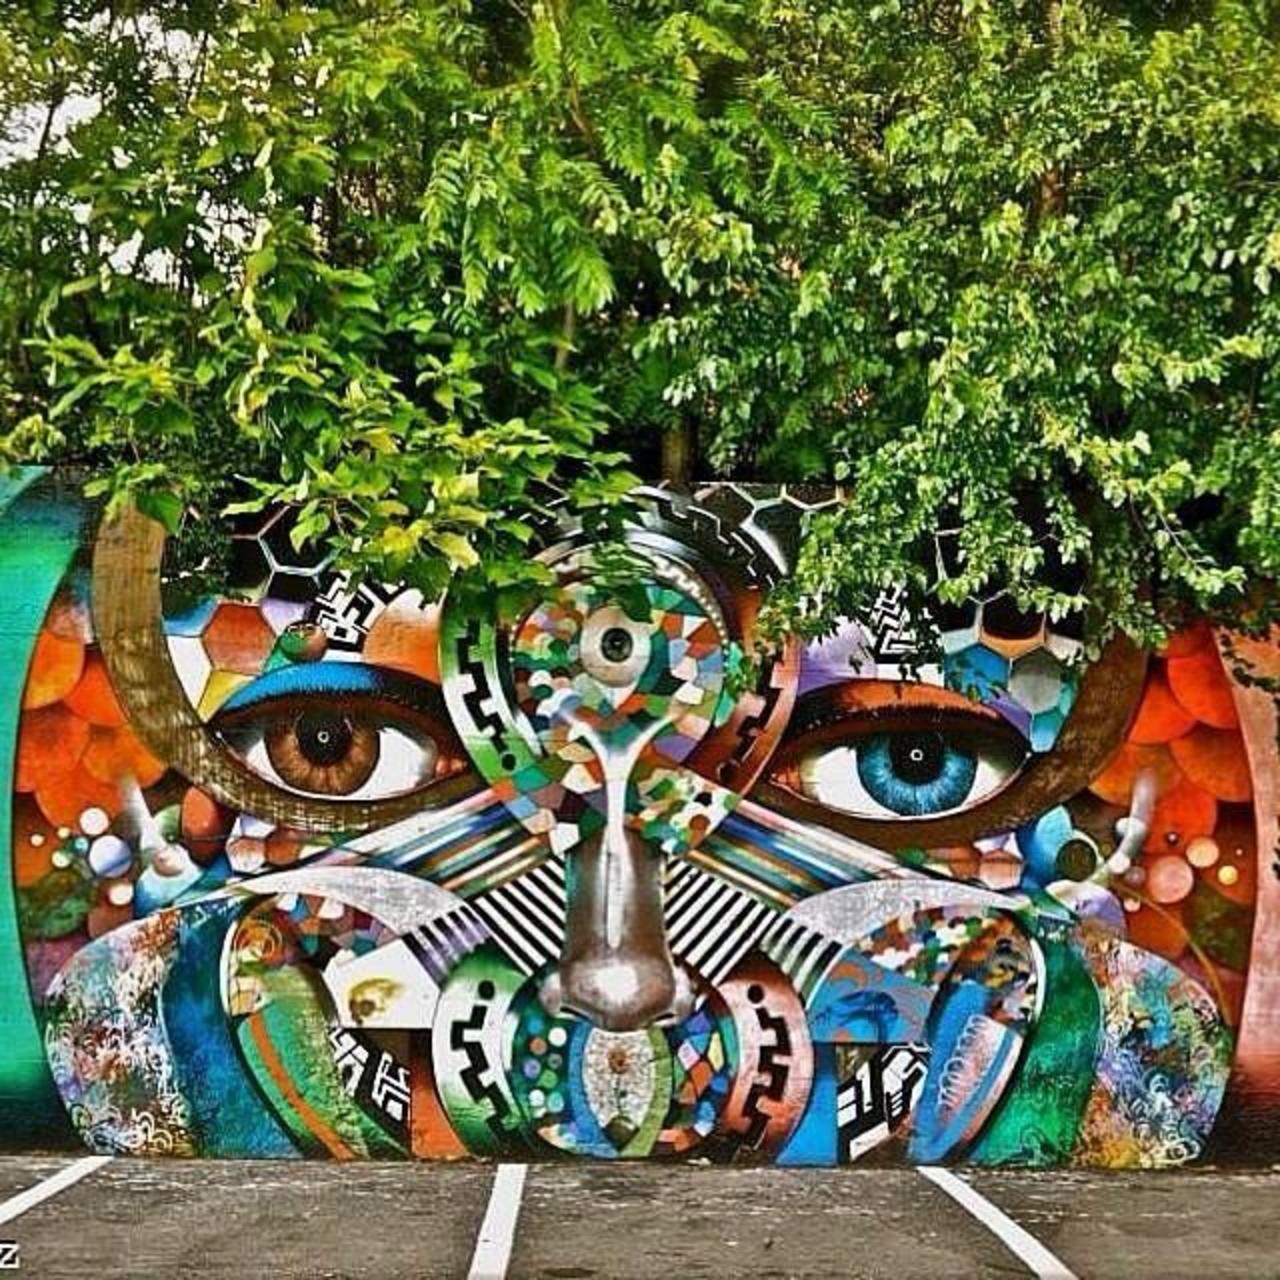 Artist @chorboogie new nature & Street Art piece. #art #mural #graffiti #streetart http://t.co/yWuzuied7y